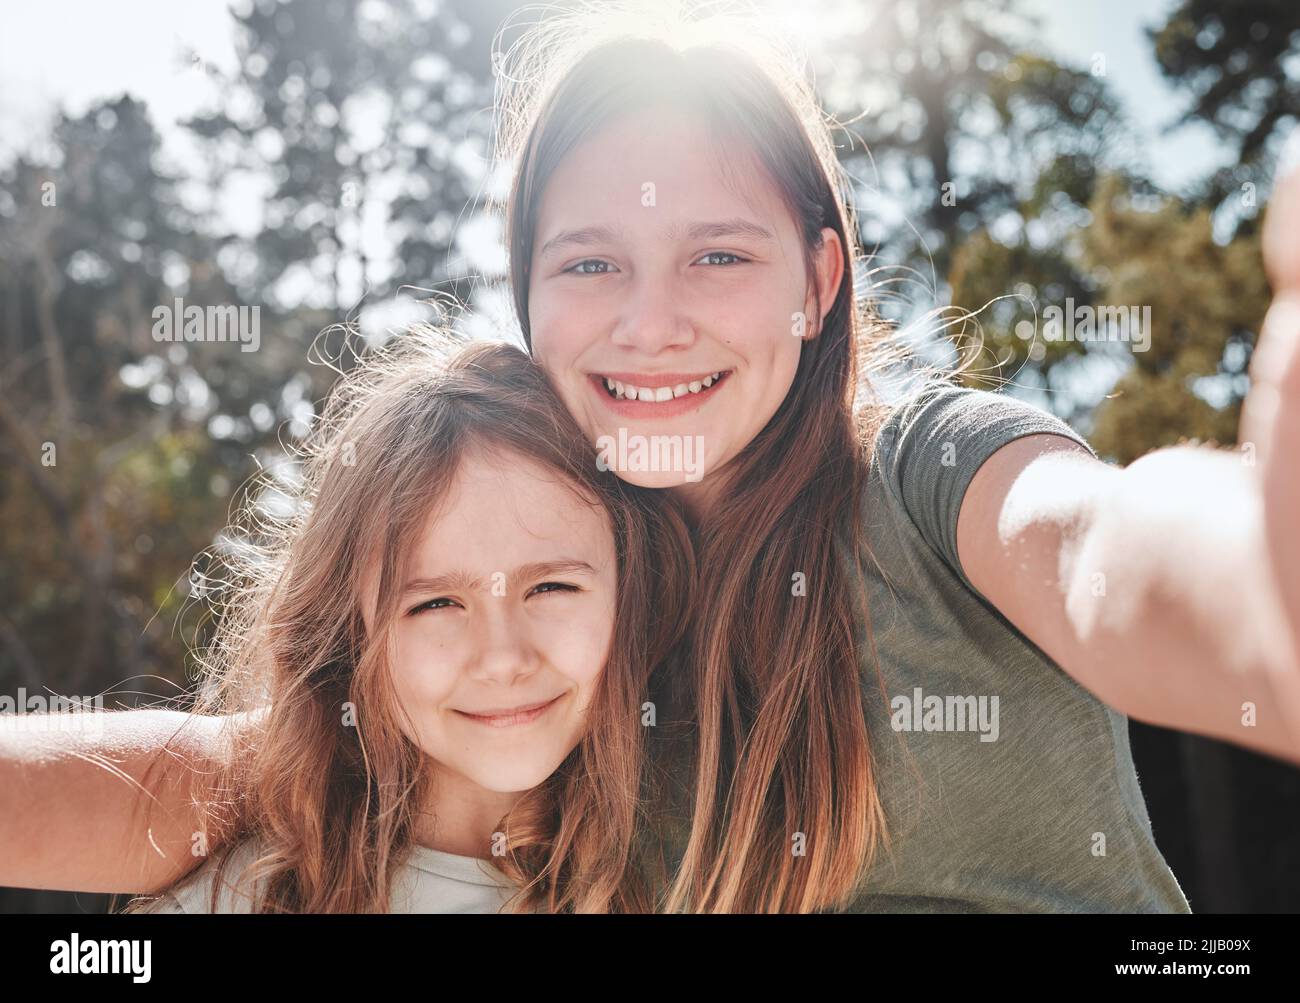 Ich liebe es, große Schwester zu sein. Ein Mädchen, das ein Selfie mit ihrer jüngeren Schwester gemacht hat. Stockfoto